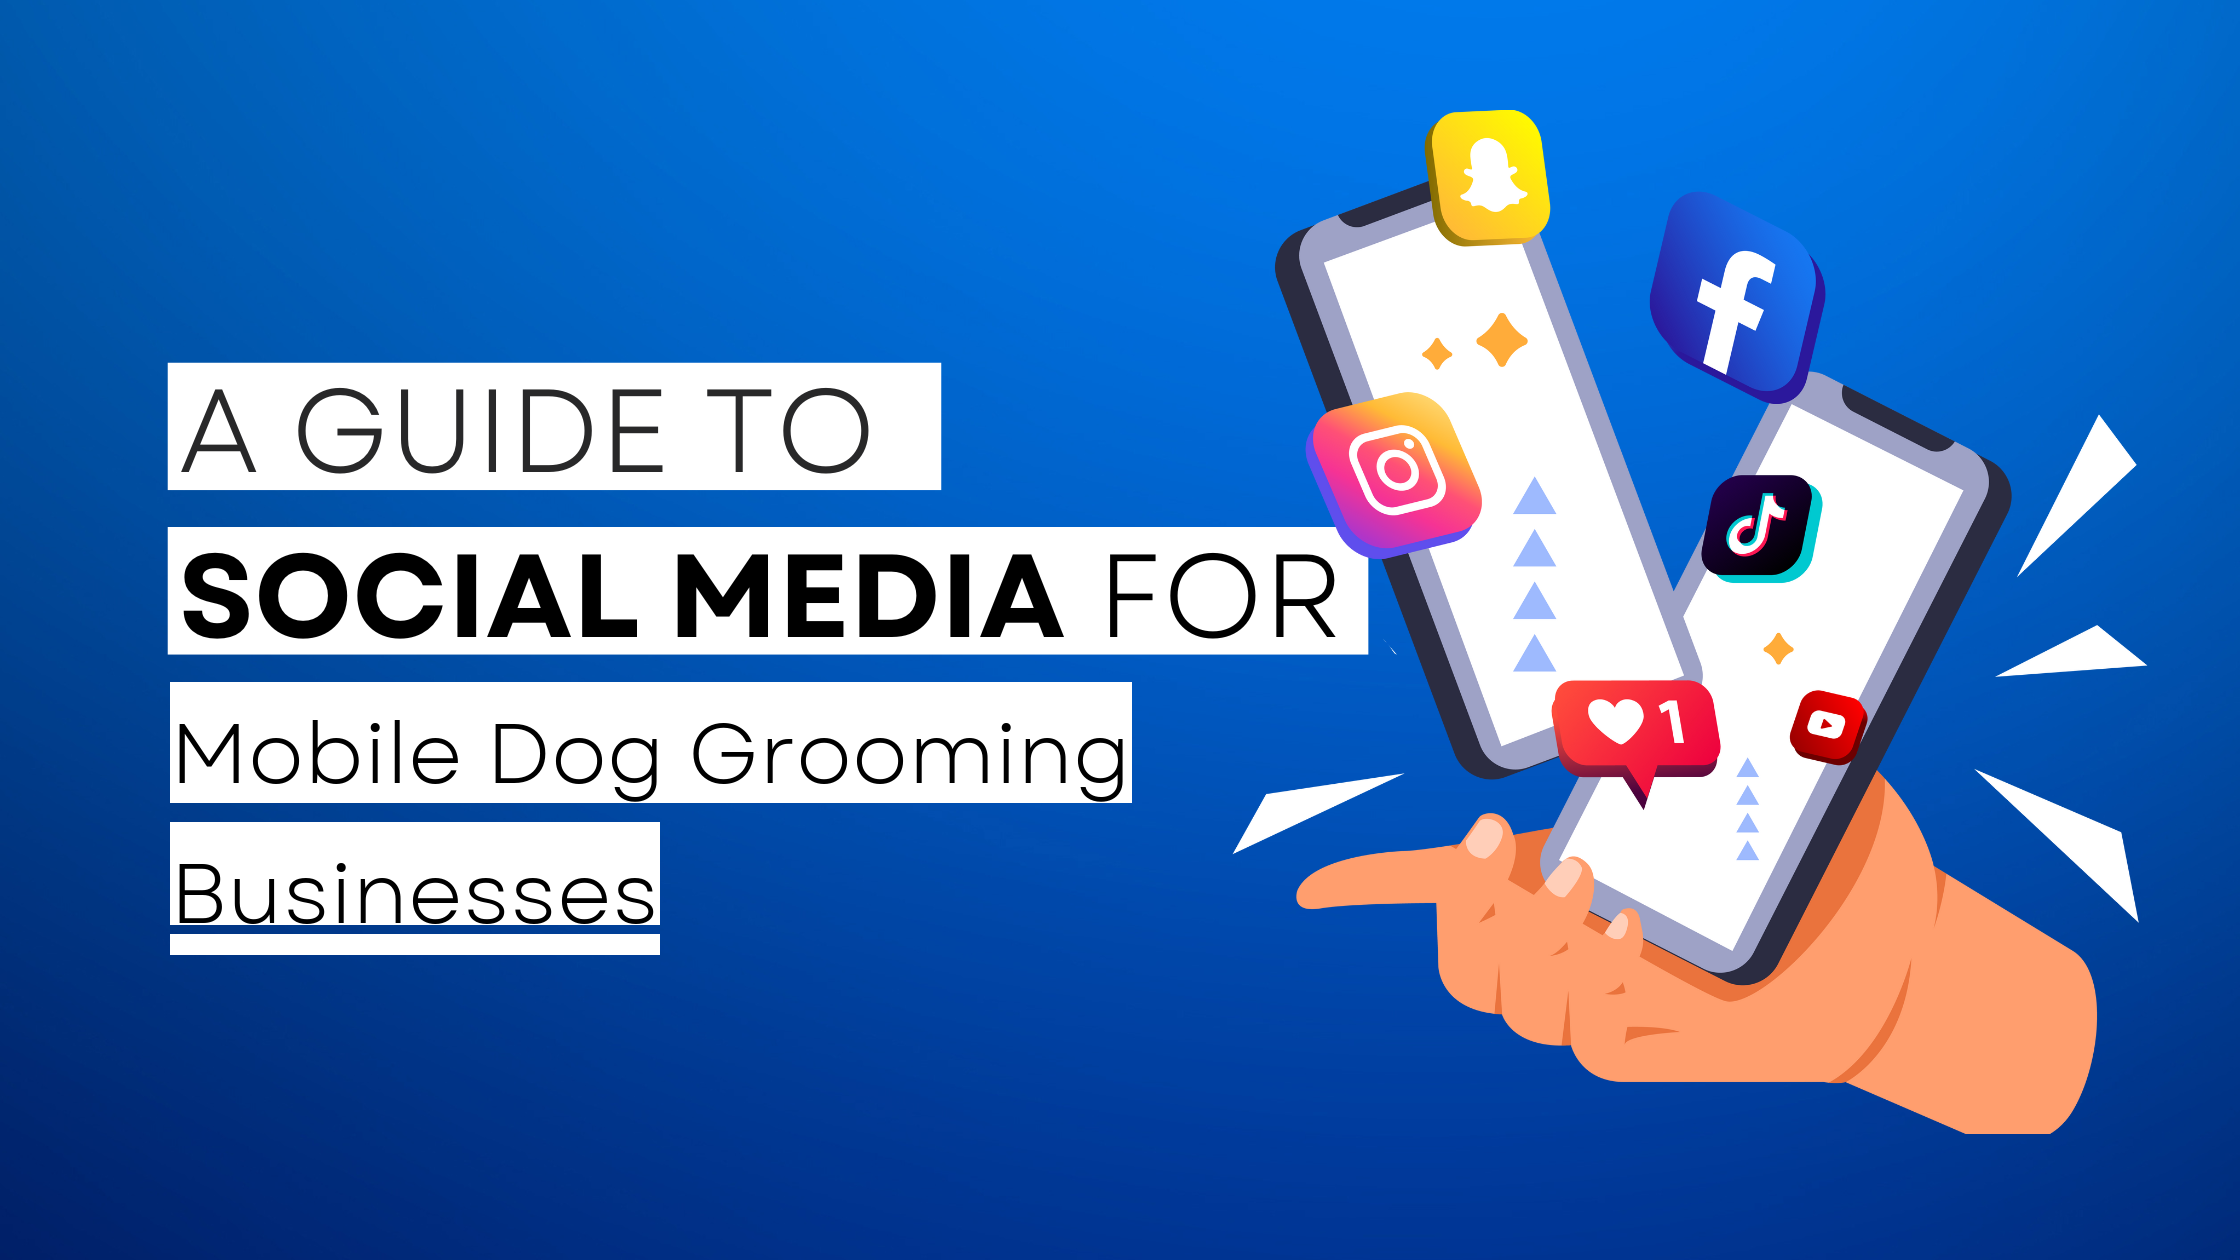 How to start Mobile Dog Grooming  on social media